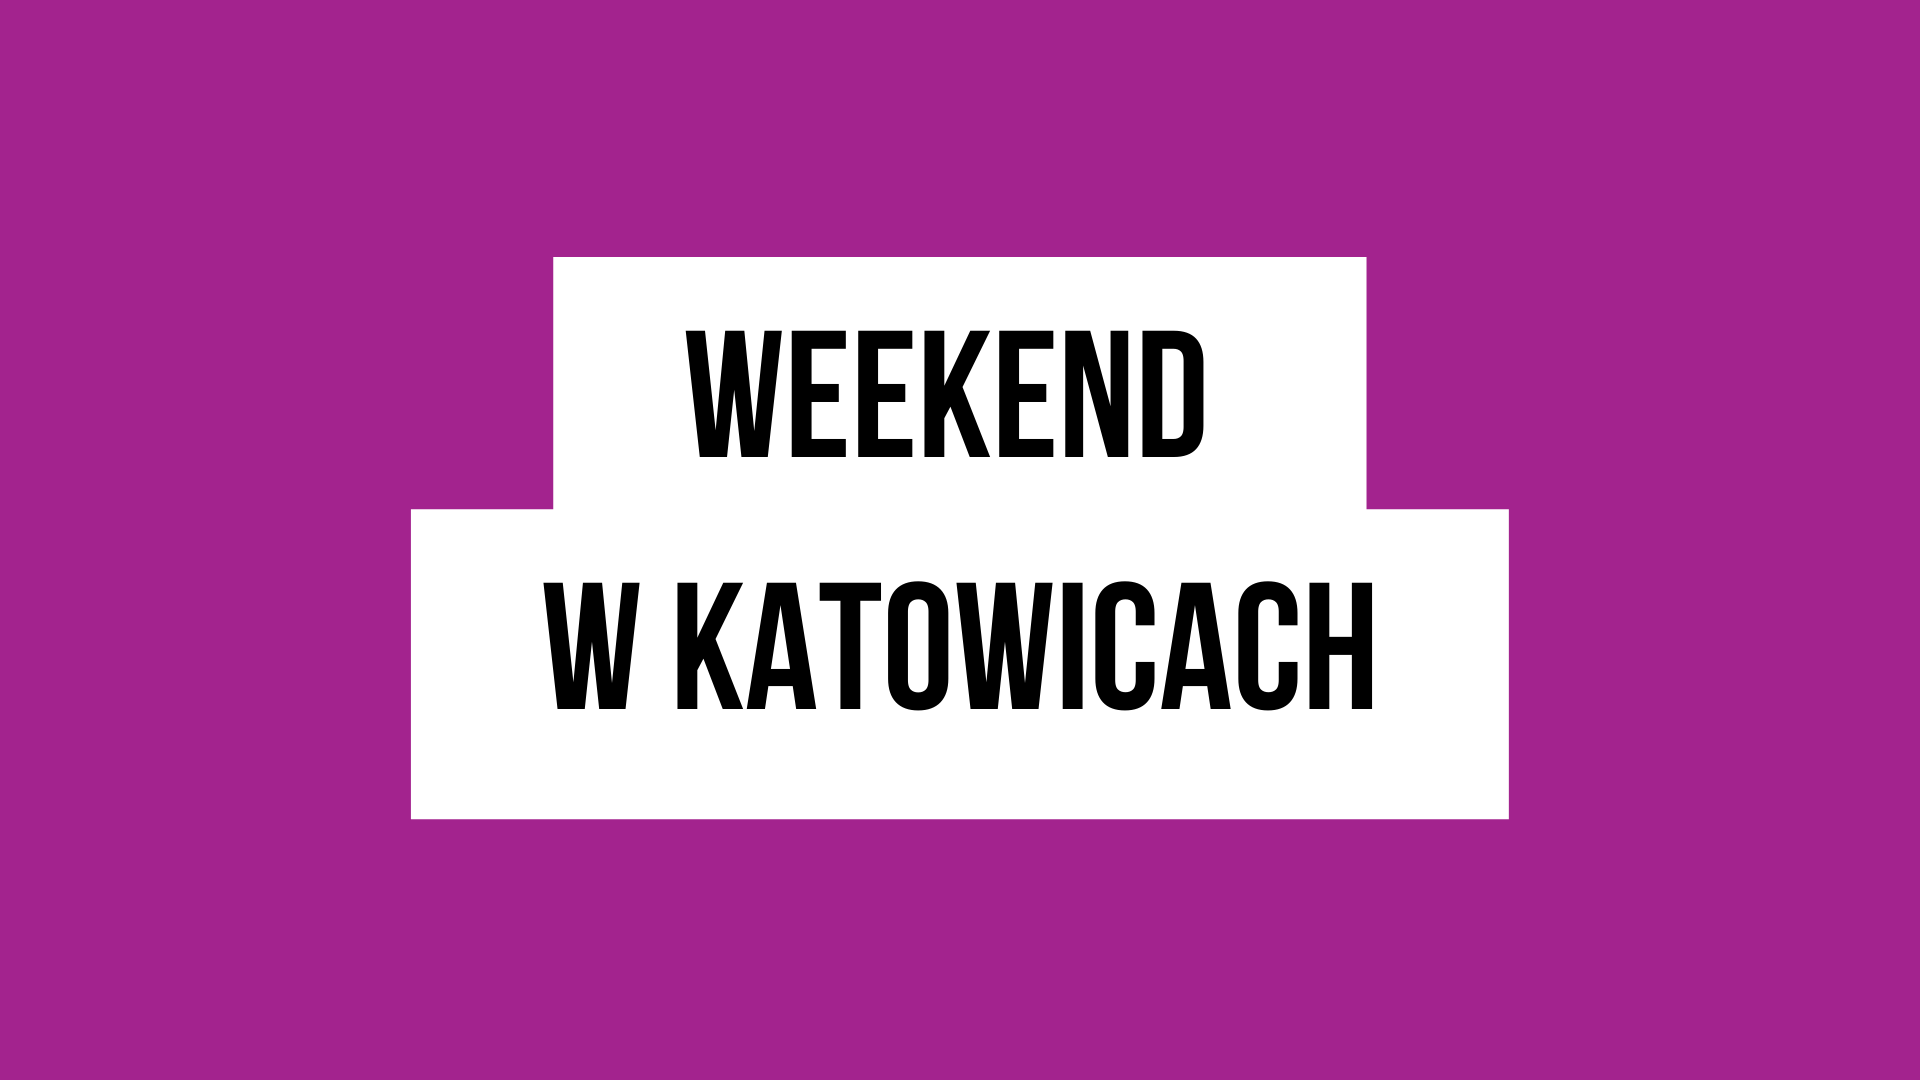 Weekend w Katowicach to cykl portalu WKATOWICACH.eu. Warto śledzić go regularnie!